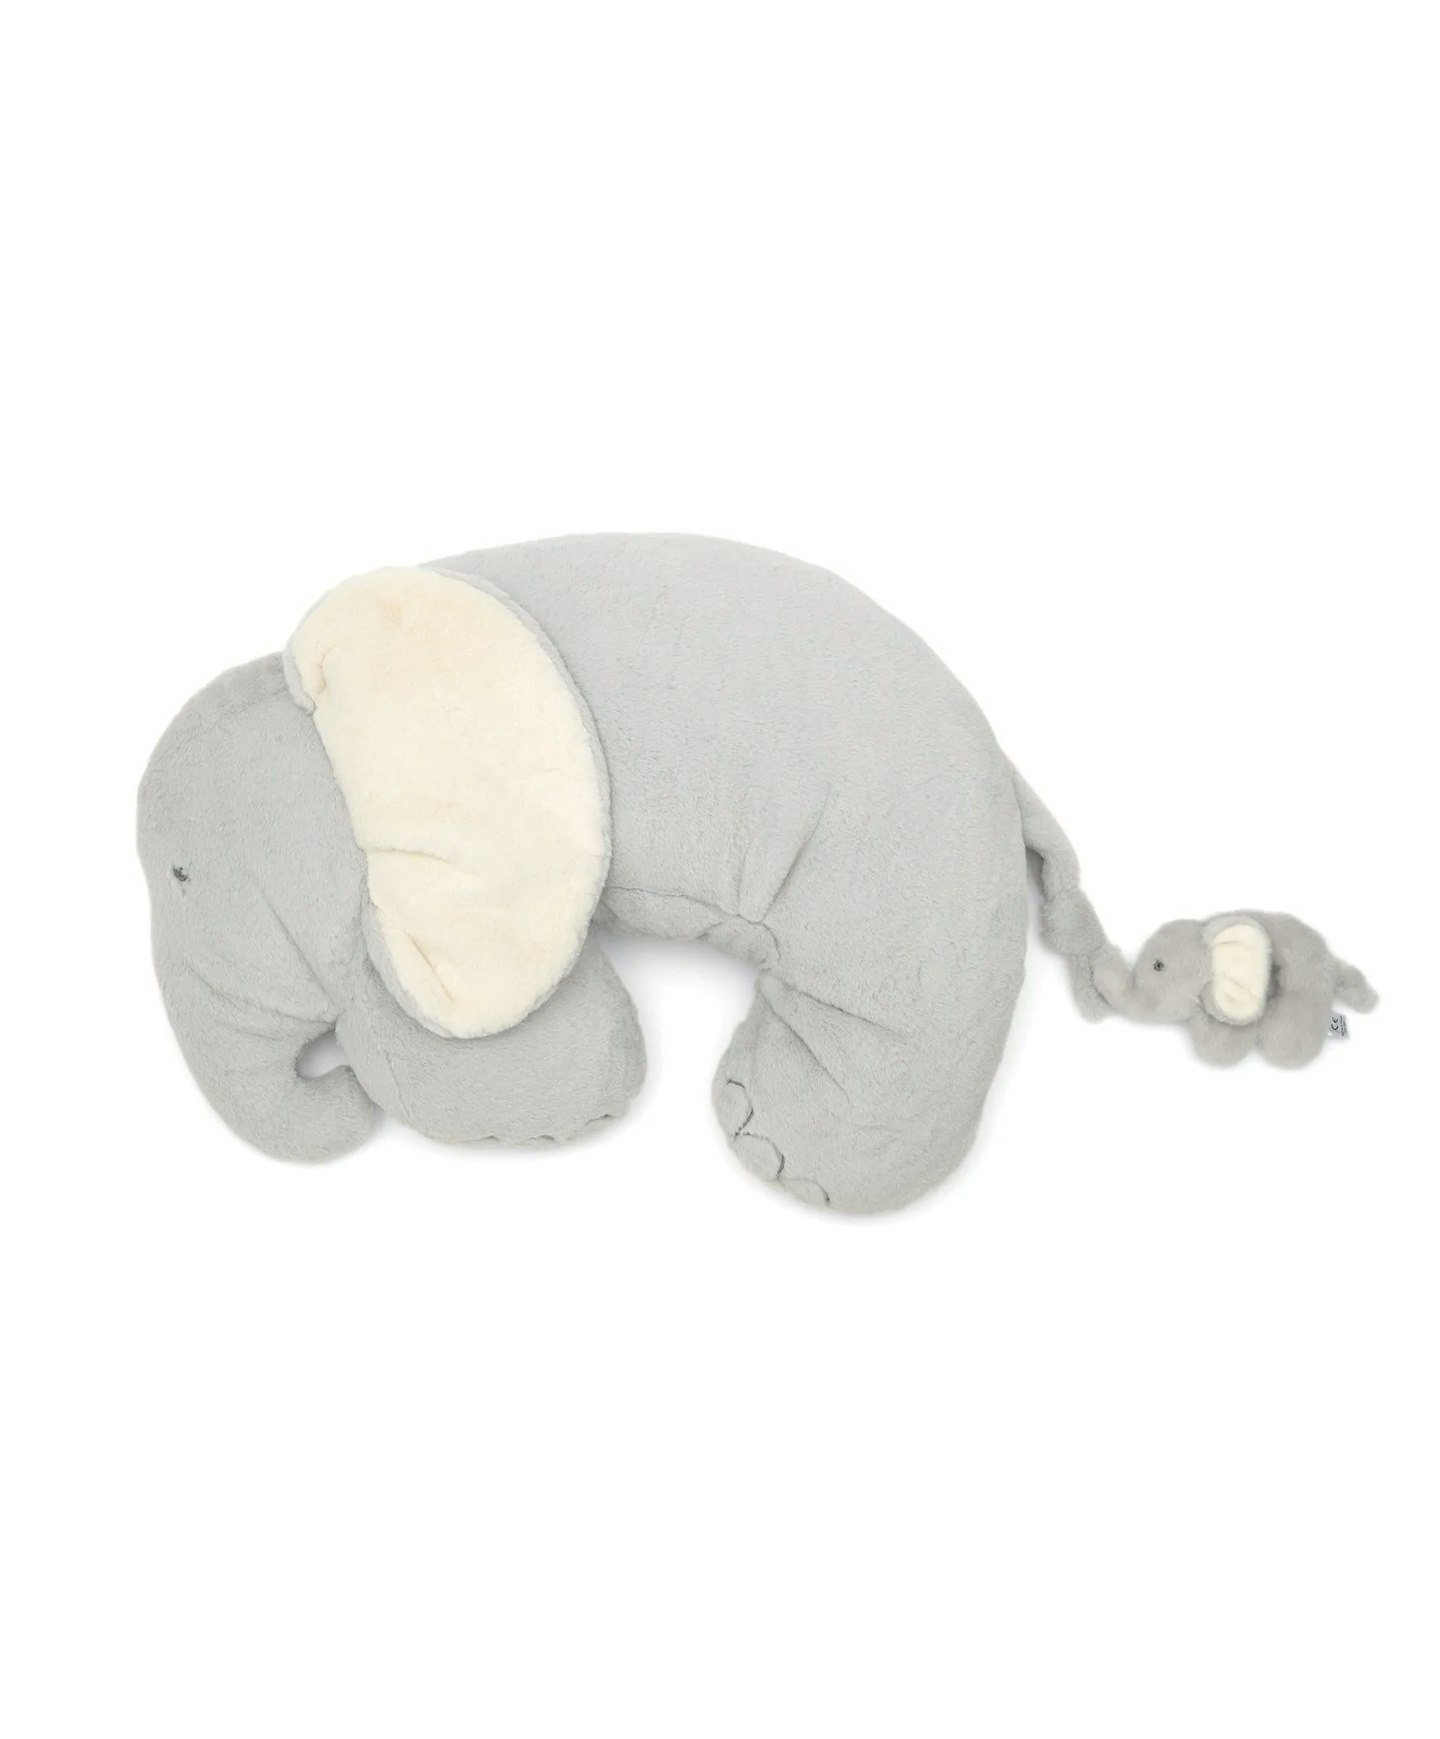 Mamas & Papas Tummy Time Snugglerug Elephant